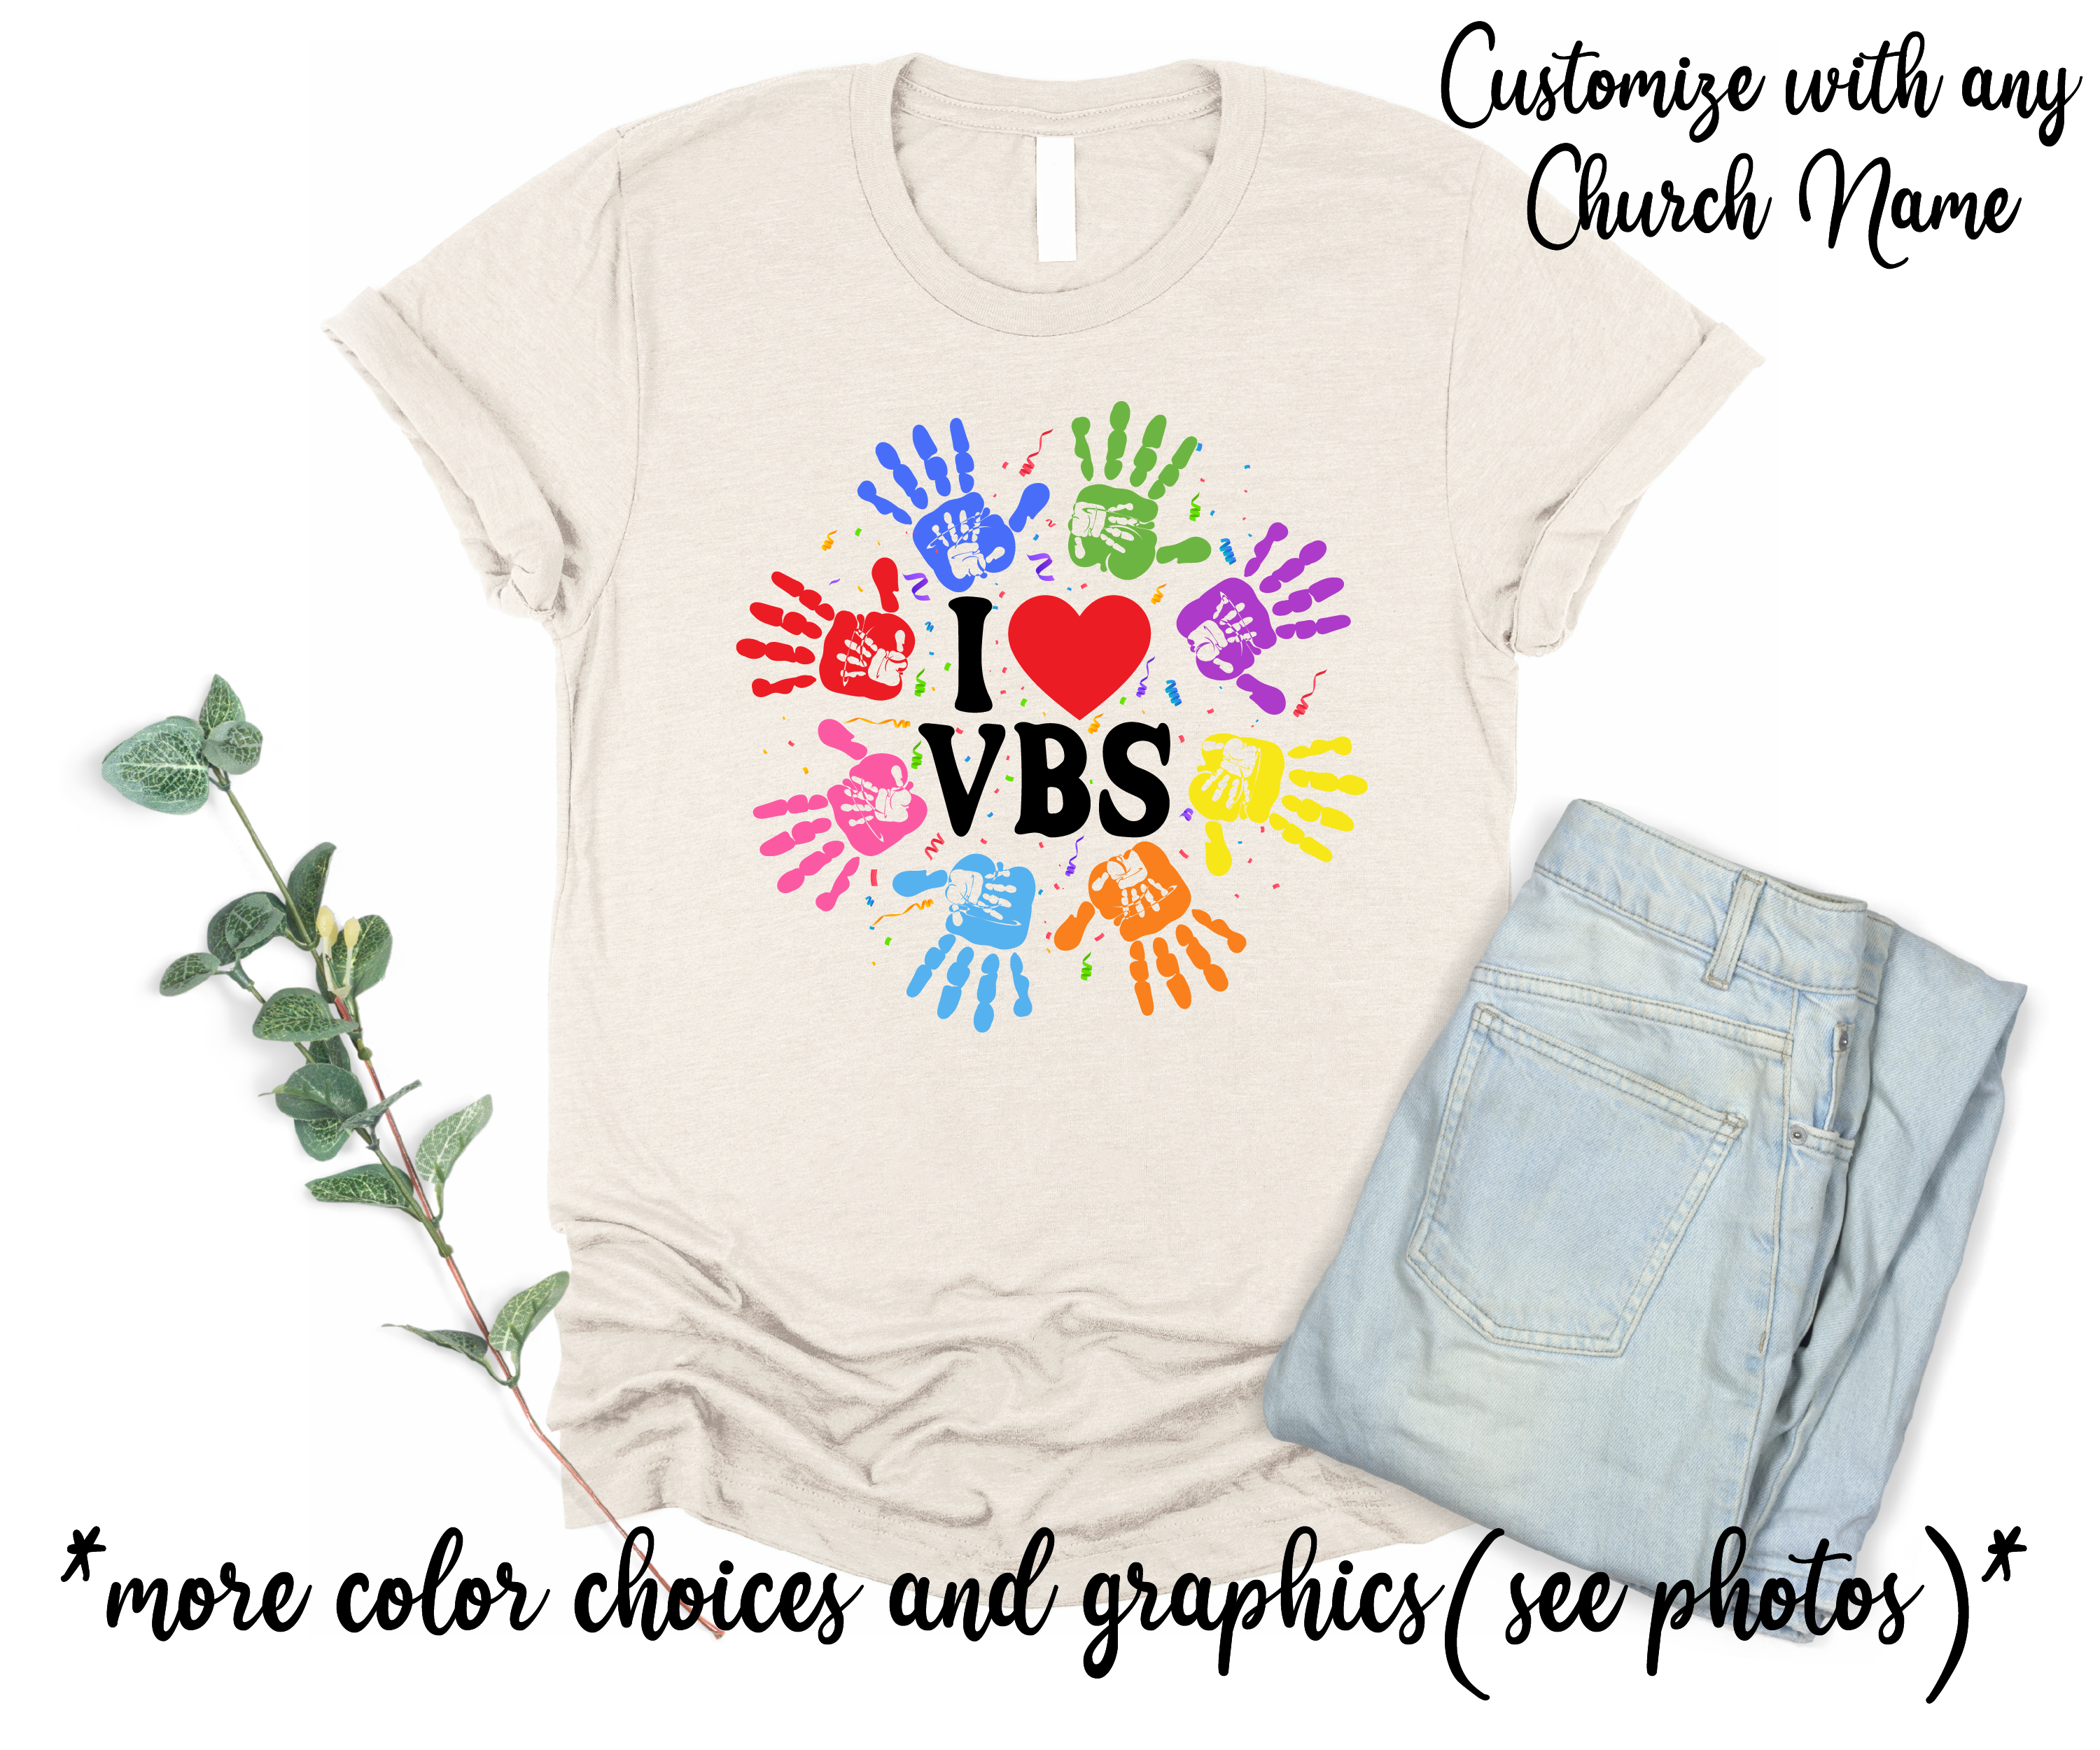 VBS Custom Church Name Vacation Bible School Team Shirts